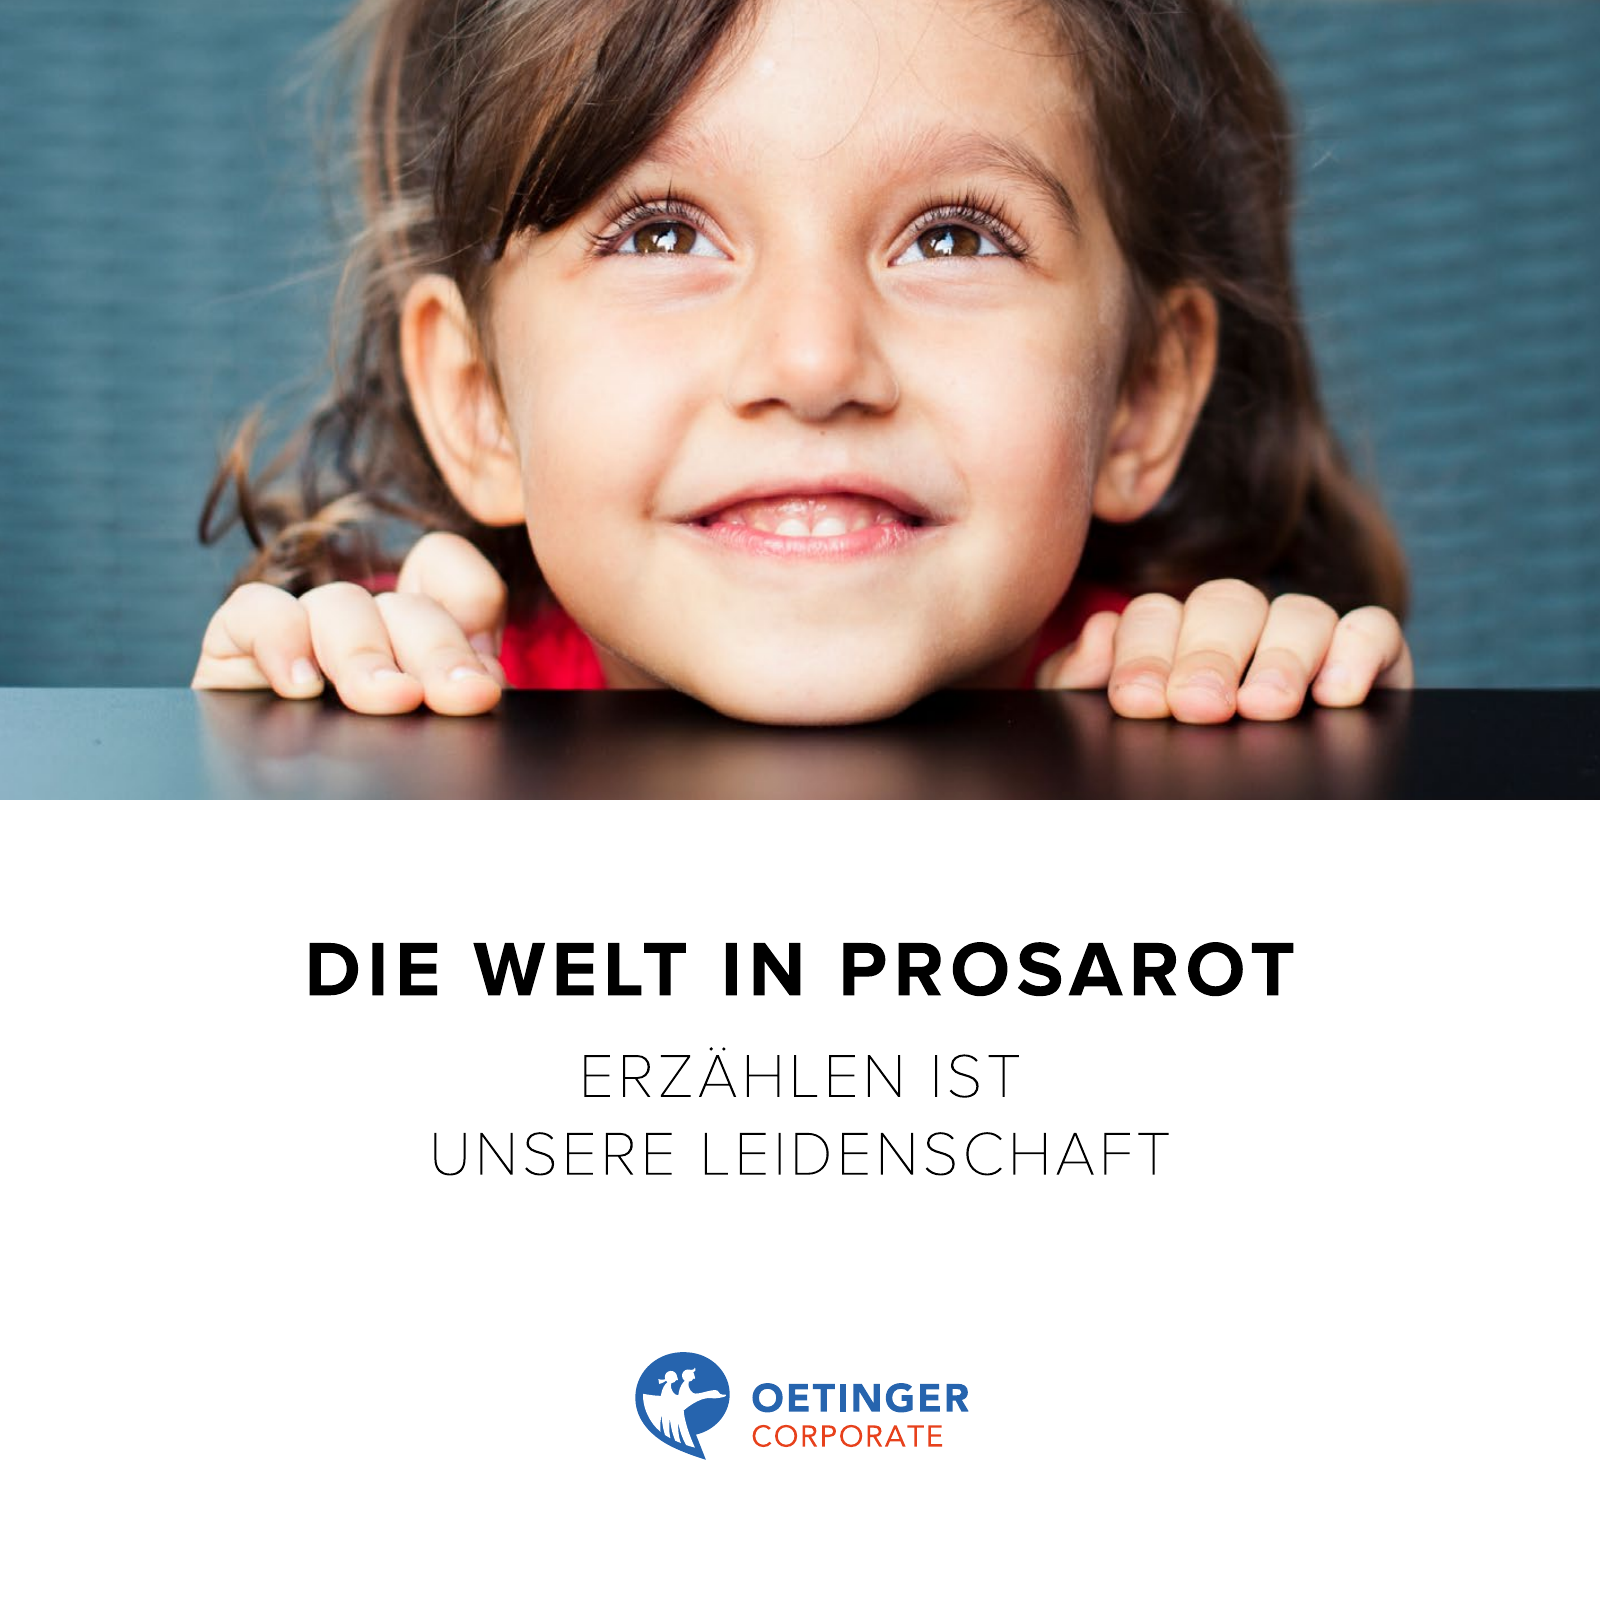 Vorschau Imagebroschüre »Die Welt in Prosarot« – Oetinger Corporate Seite 1